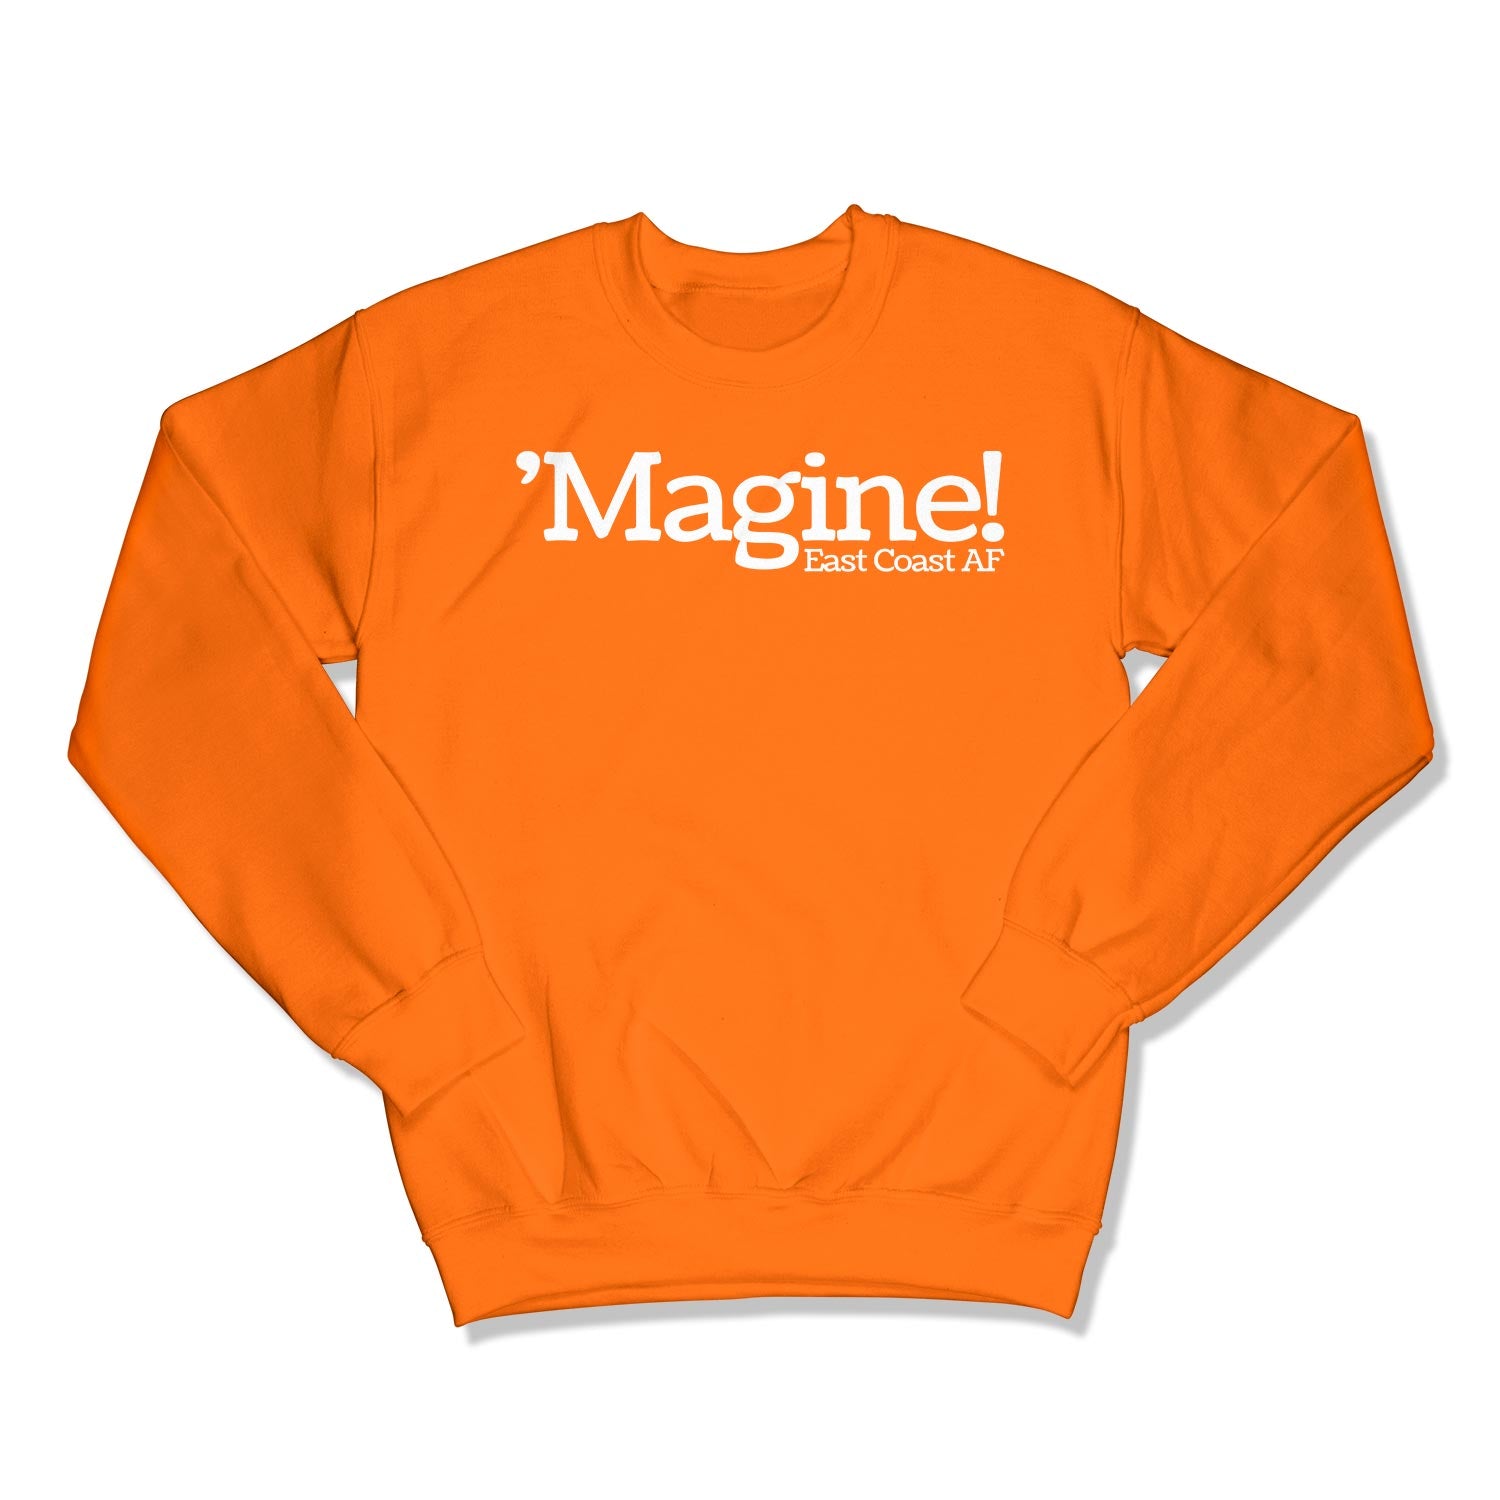 'Magine! Unisex Crewneck Sweatshirt in Color: Safety Orange - East Coast AF Apparel